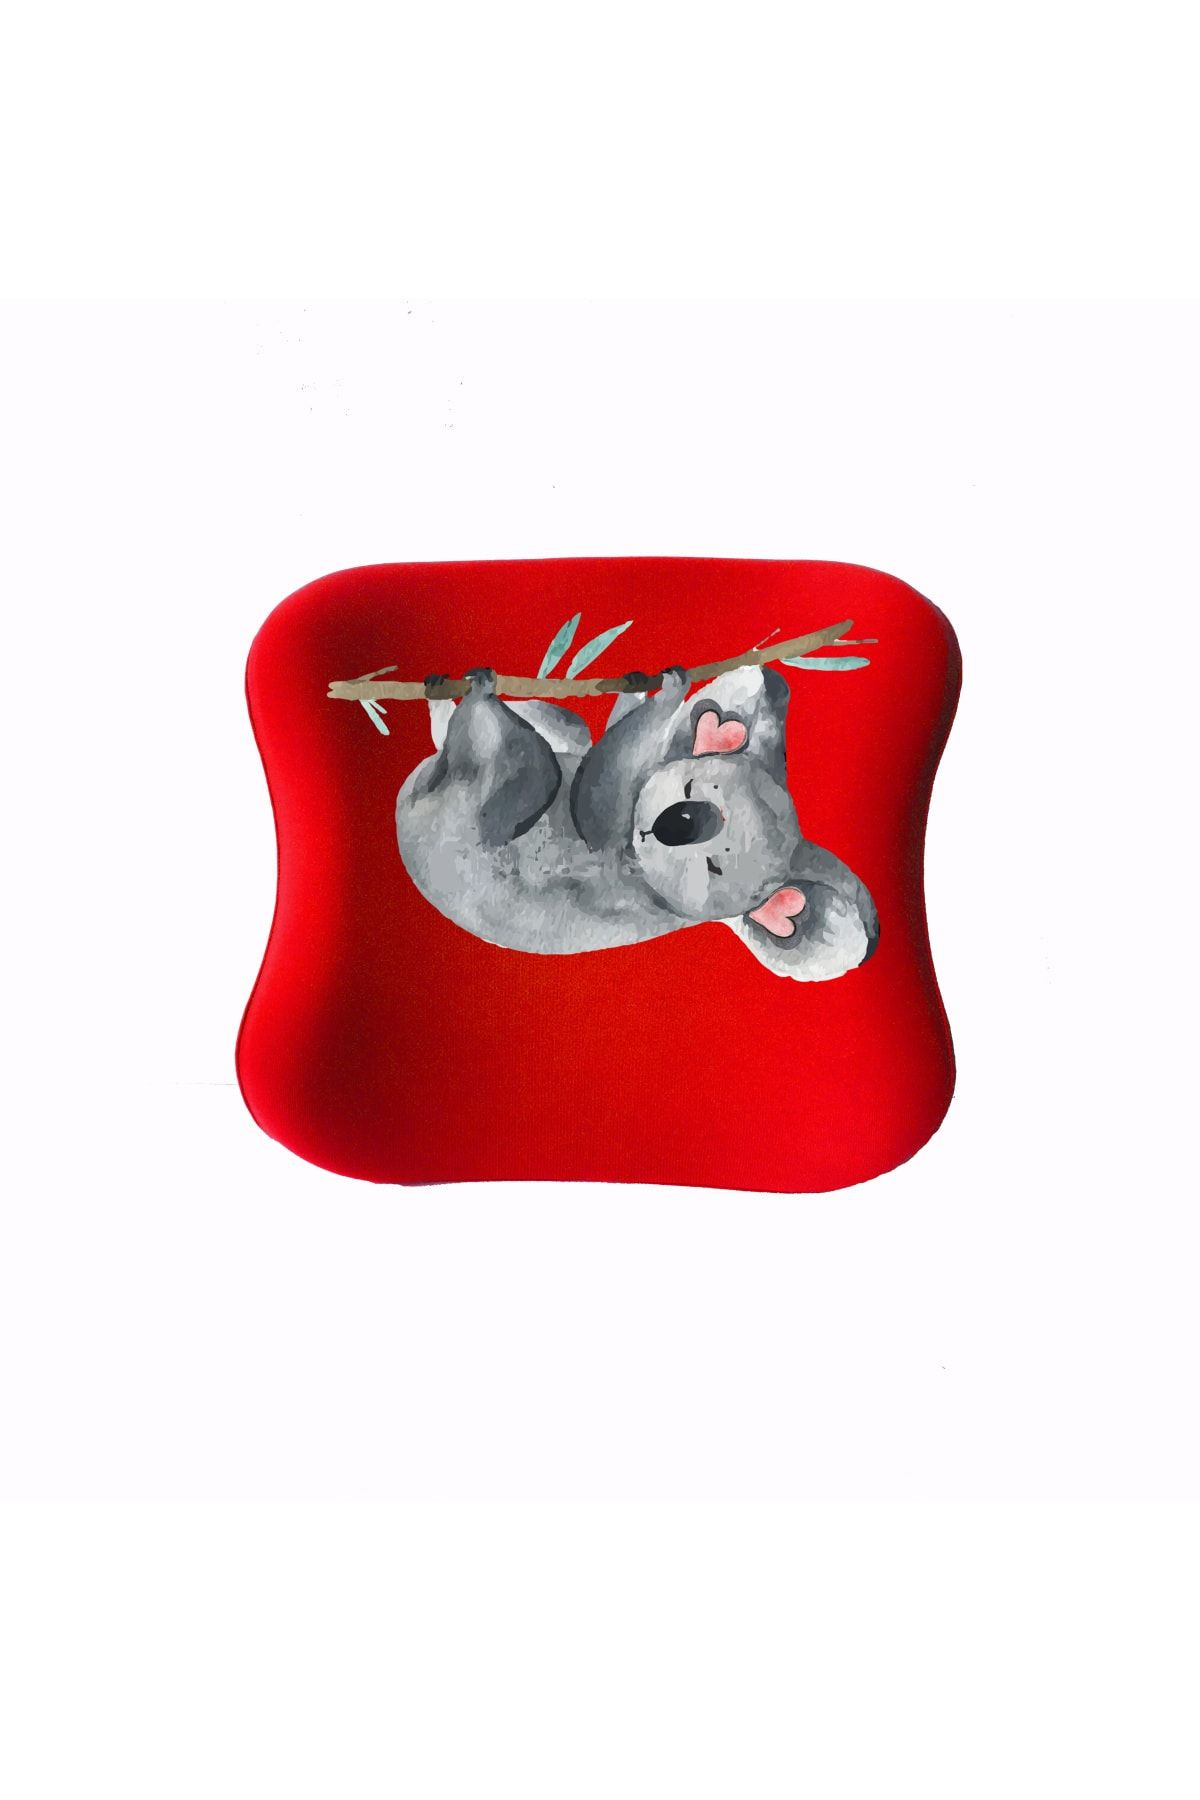 Officeküp Officekup Çocuk Çalışma Masası Sandalyesi Visco Medikal Ortopedik Bel Yastığı - Kırmızı Koala